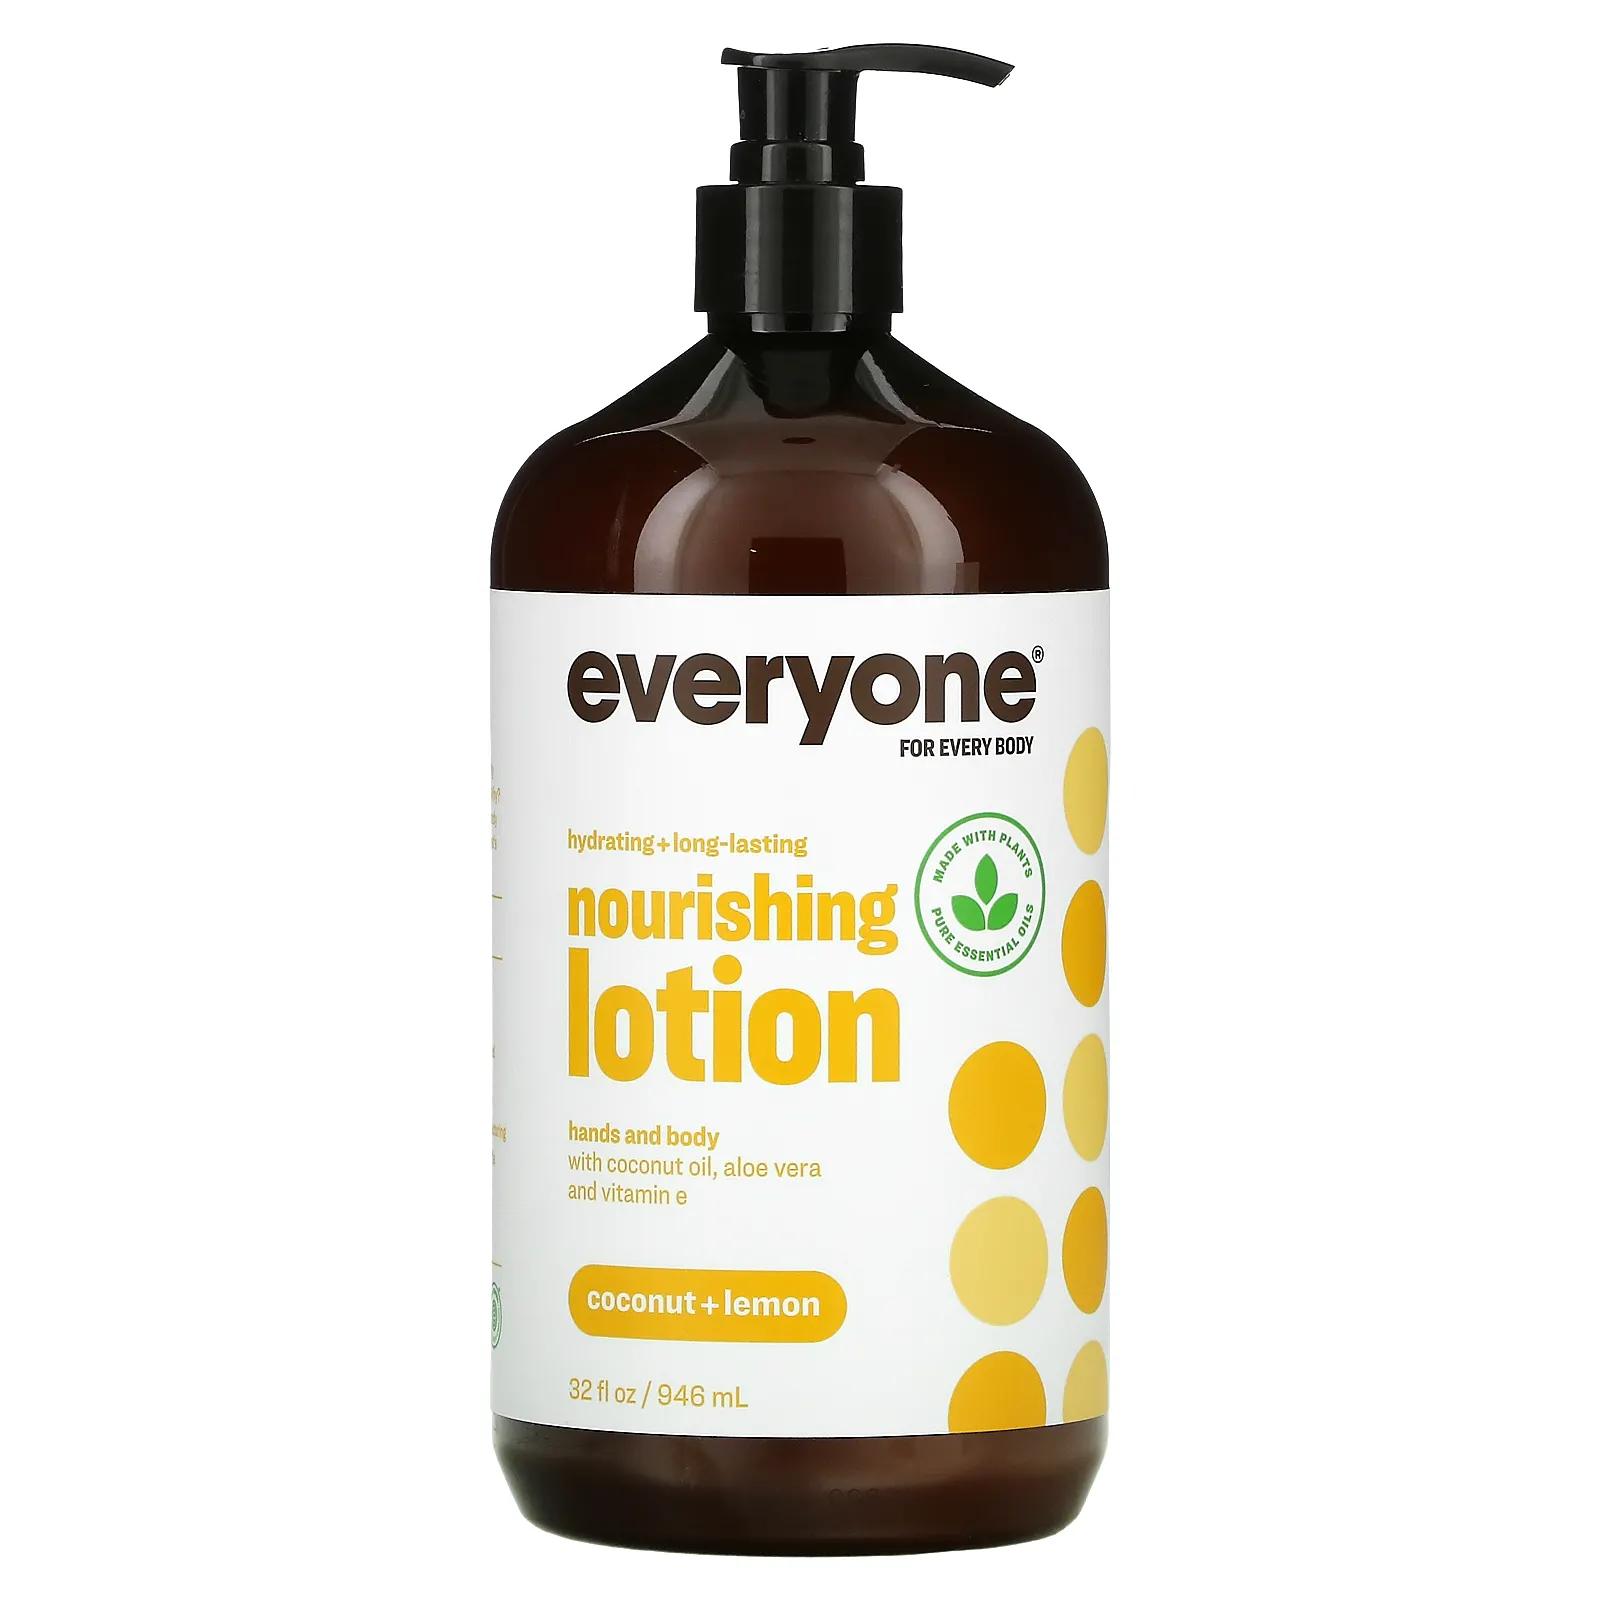 EO Products Everyone for Every Body Питательный лосьон для тела Кокос + лимон 32 жидких унции цена и фото